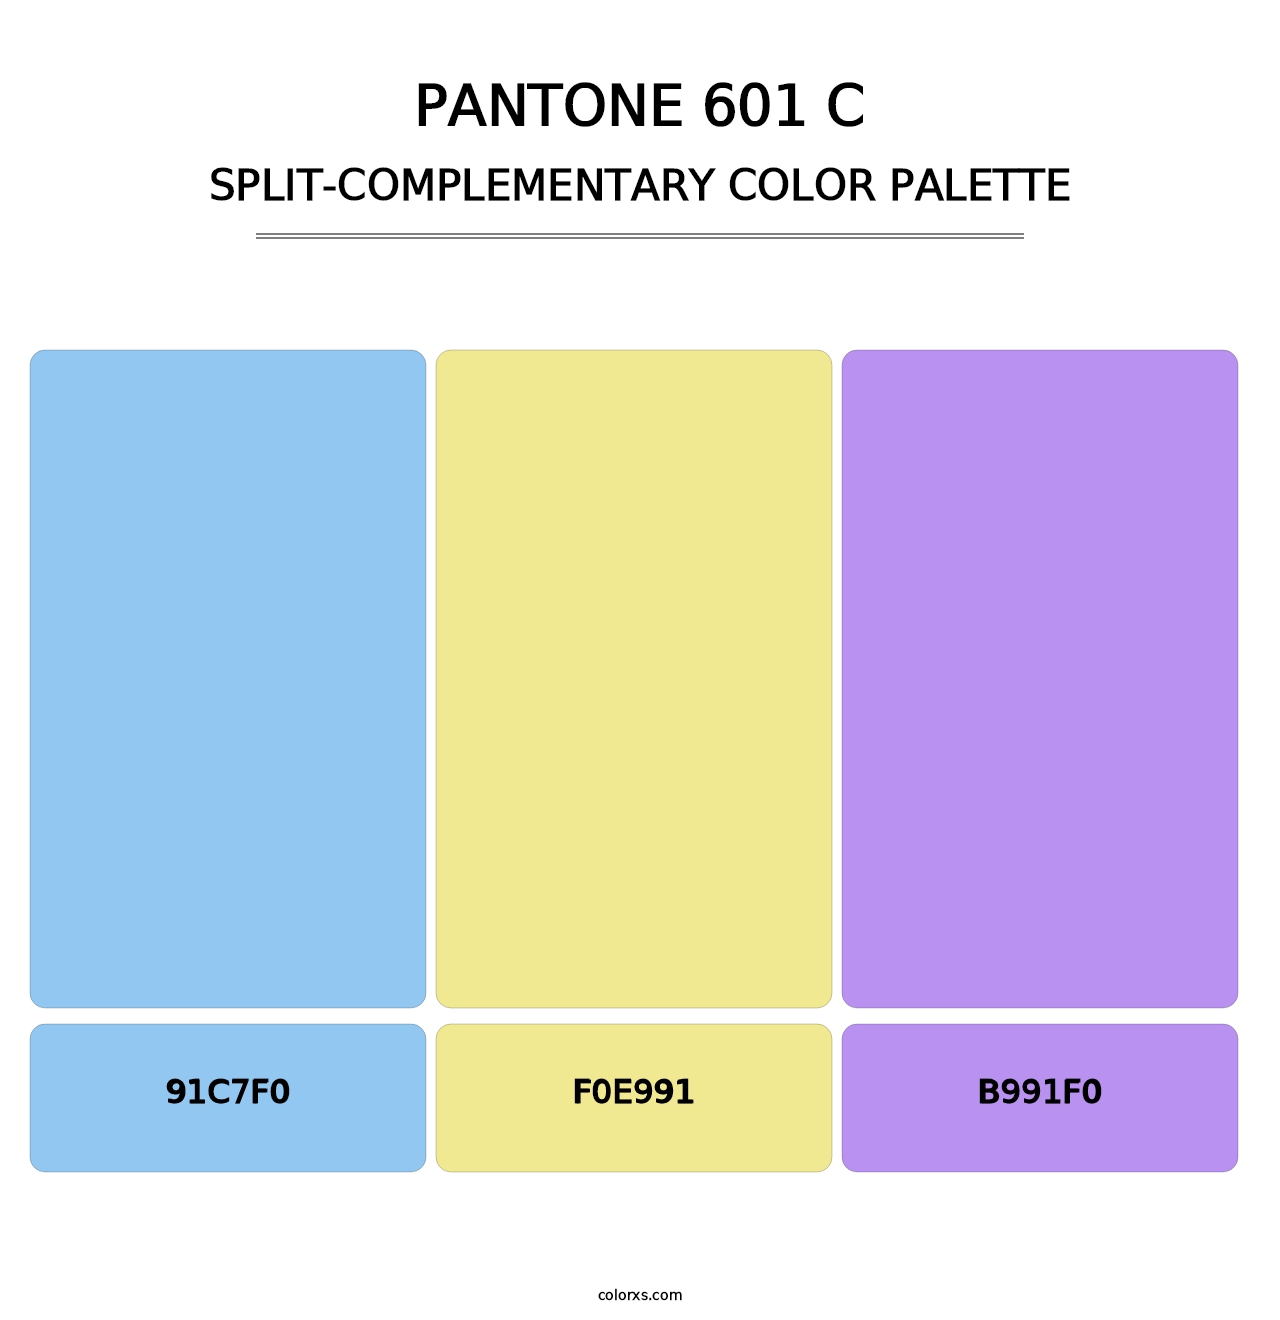 PANTONE 601 C - Split-Complementary Color Palette